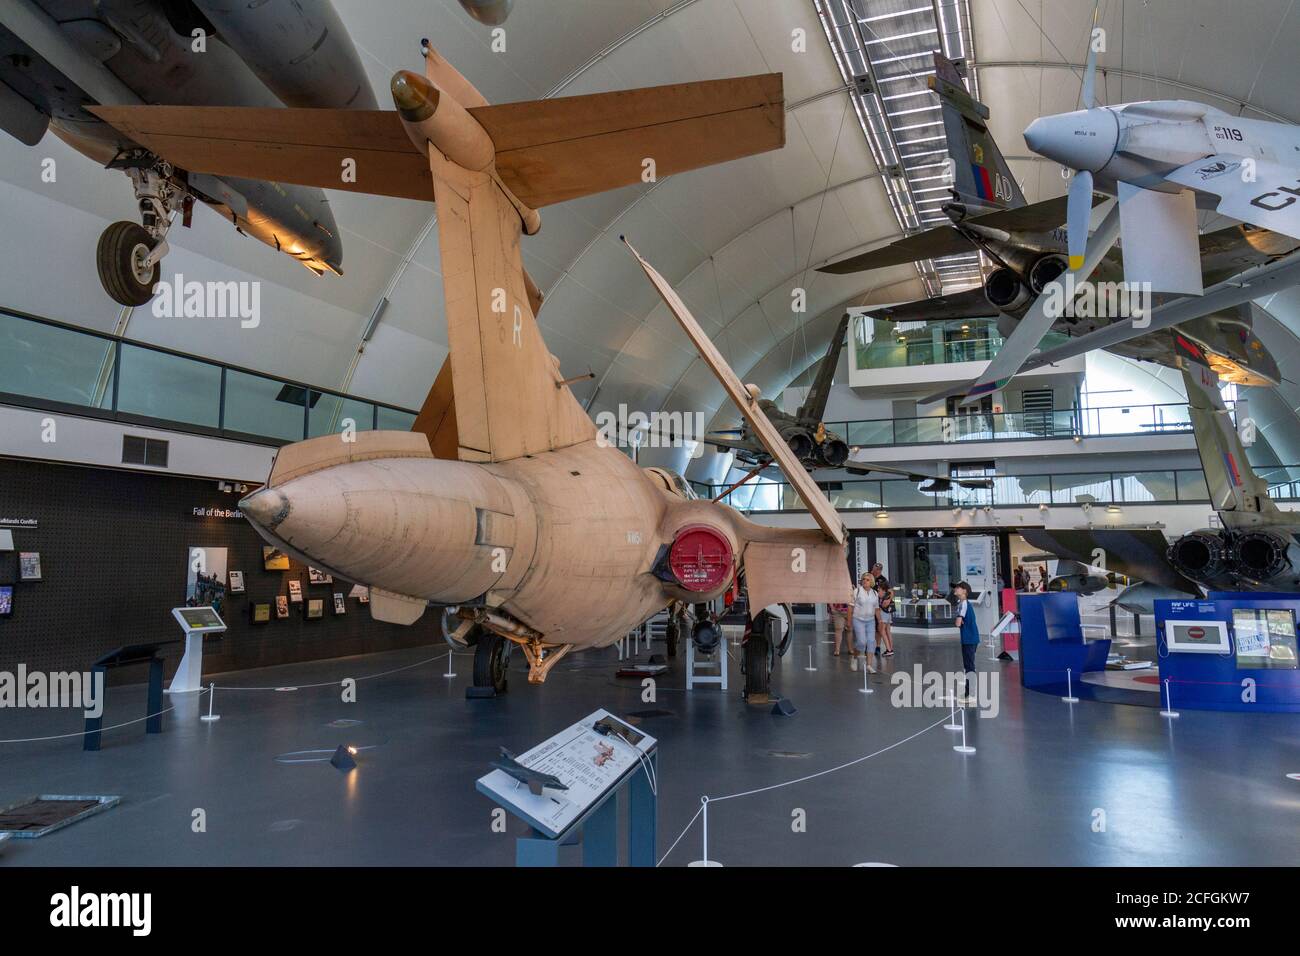 Vue générale des avions militaires modernes exposés au RAF Museum, Londres, Royaume-Uni. Banque D'Images